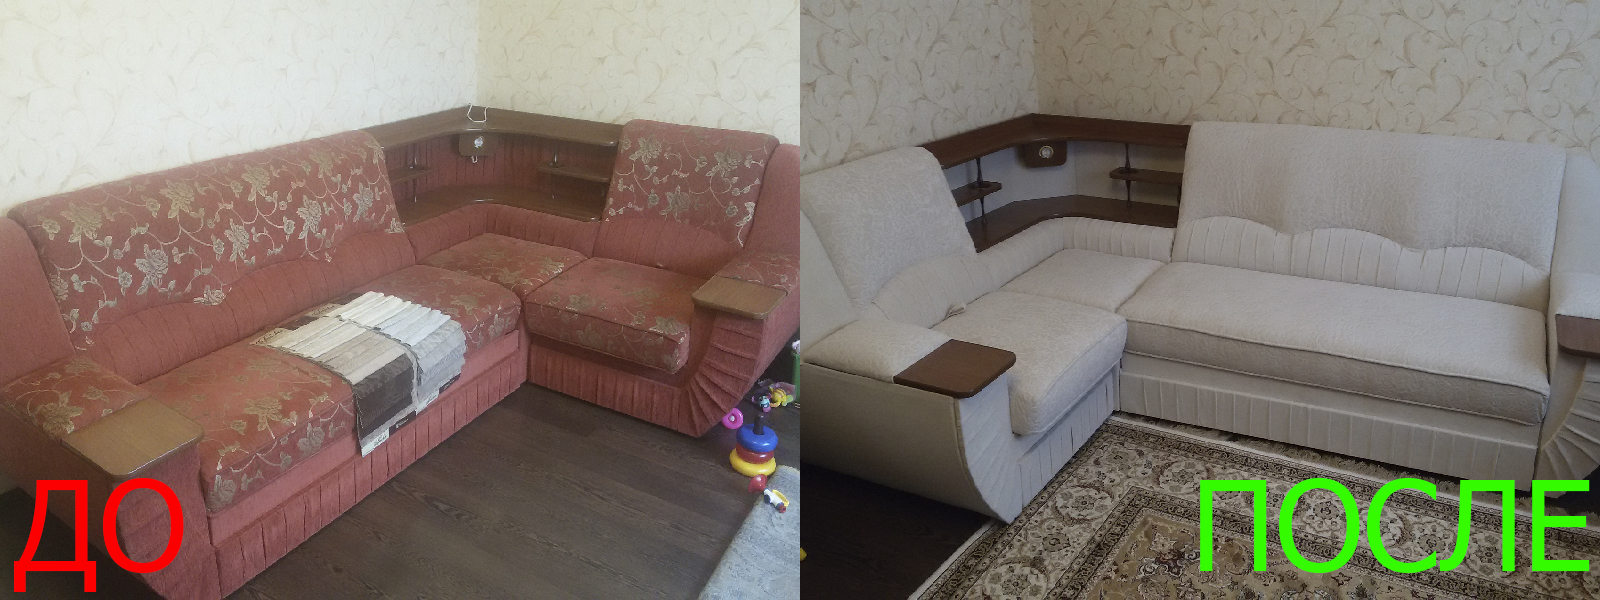 Обшивка мягкой мебели в Керчи по разумной стоимости, высокое качество тканей